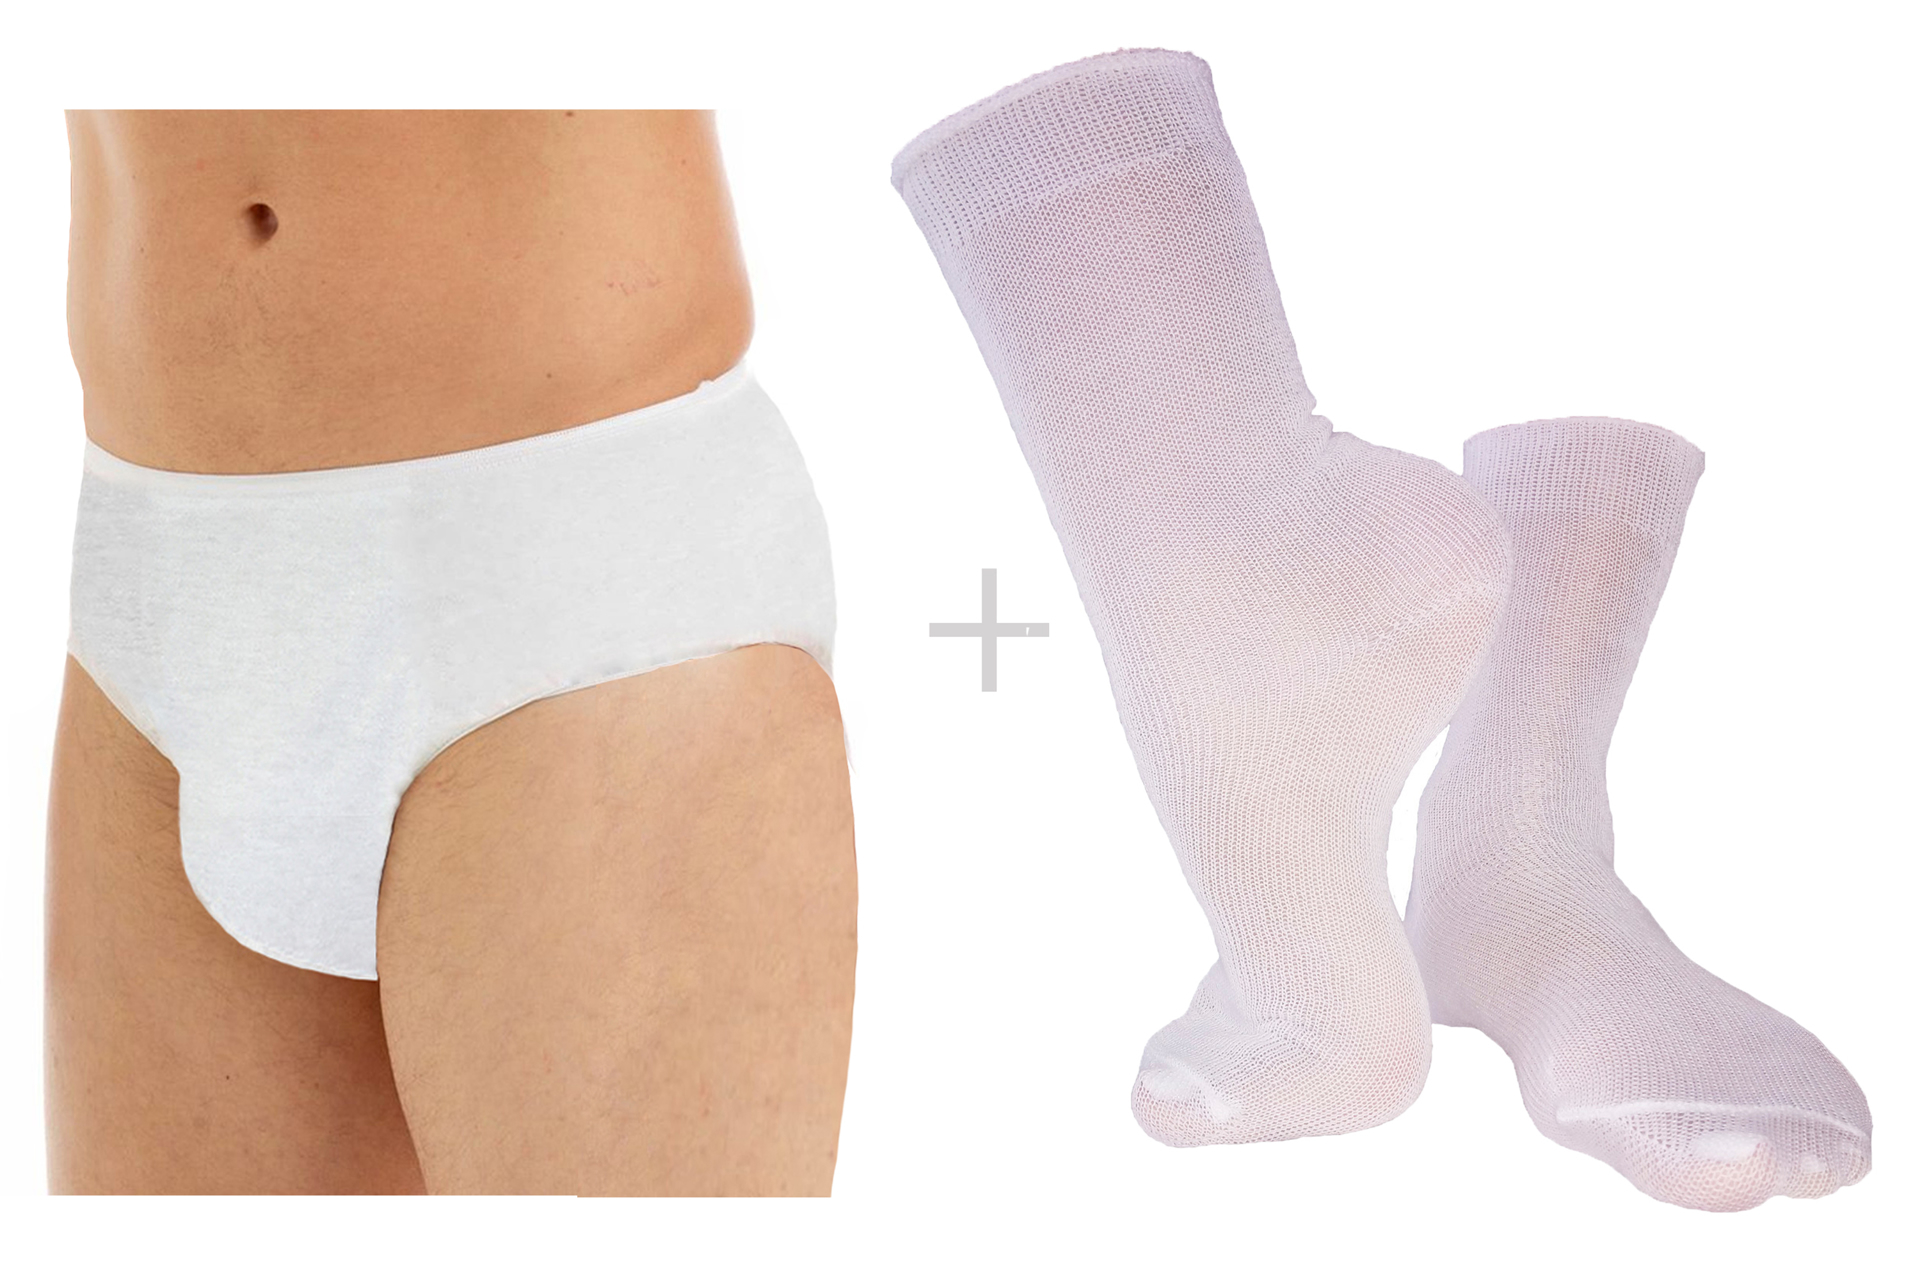 Underwear - Socks & Underwear - Clothing